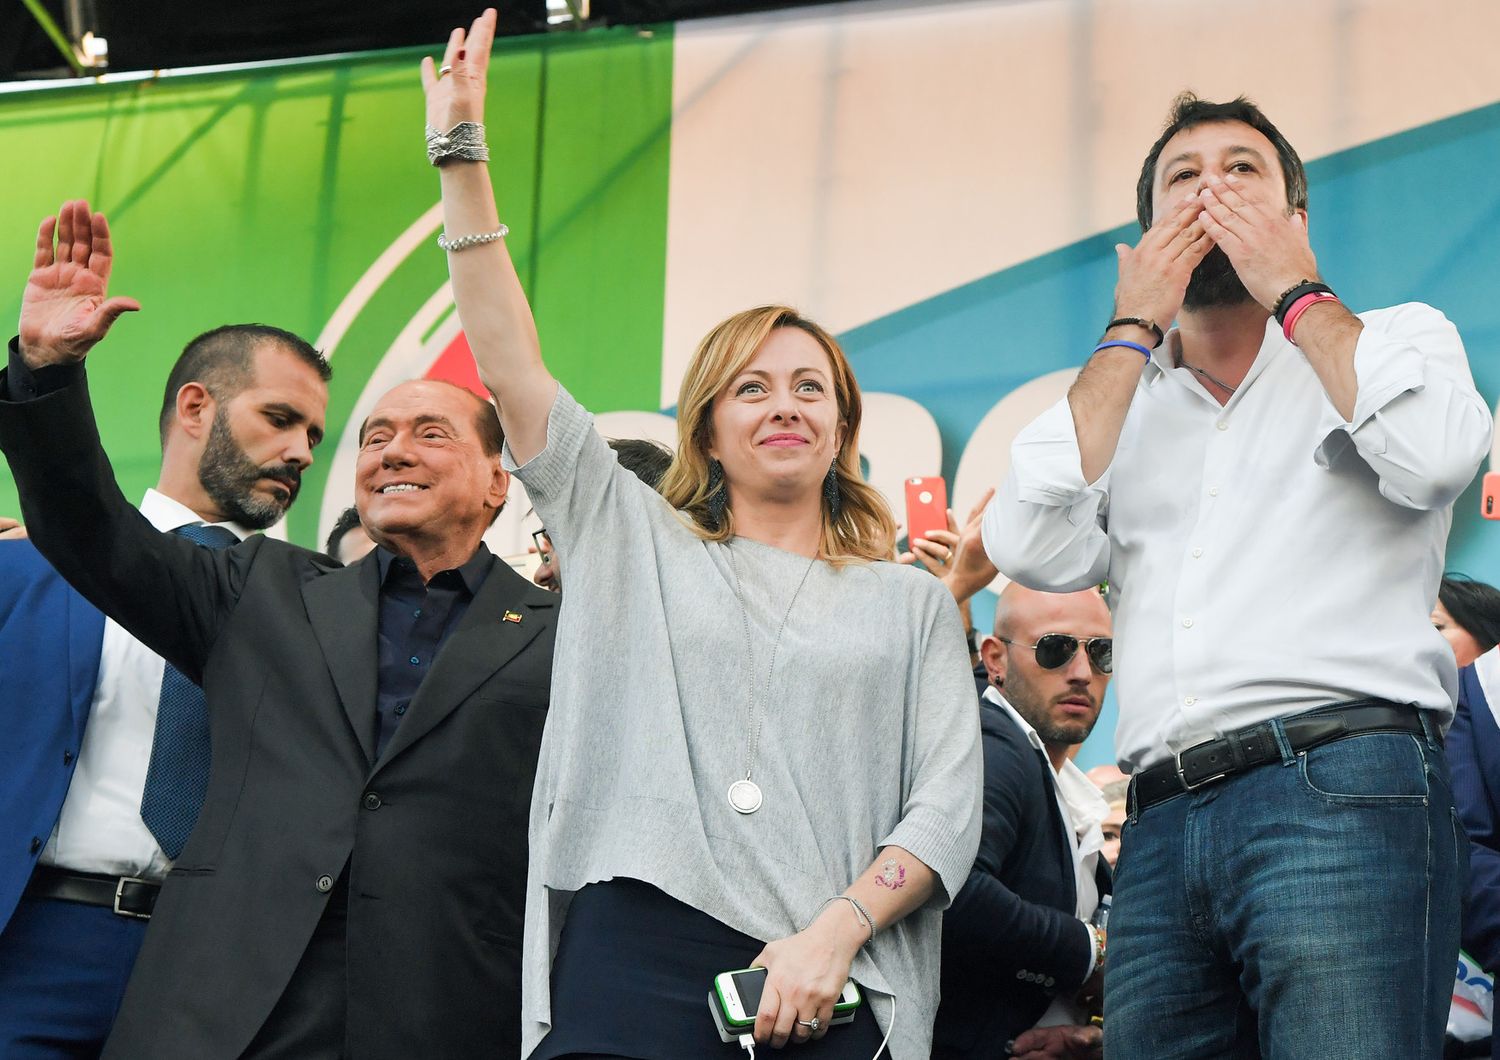 Matteo Salvini, Silvio Berlusconi, Giorgia Meloni